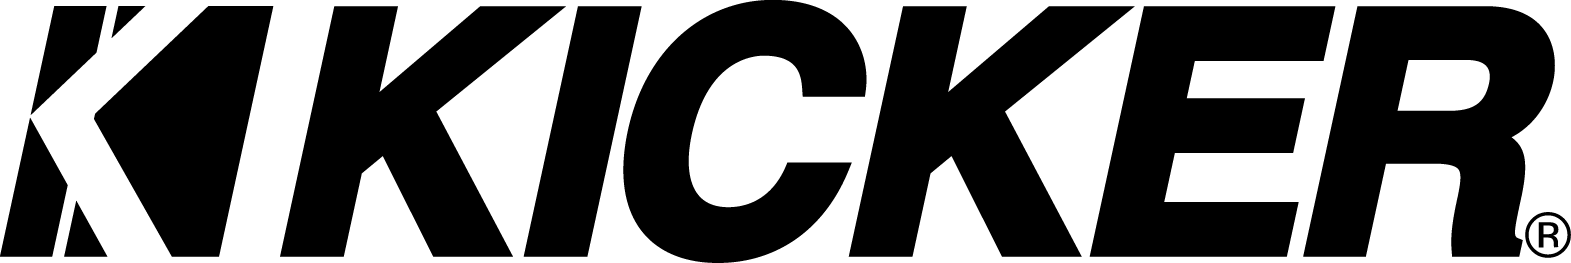 kicker-logo.png